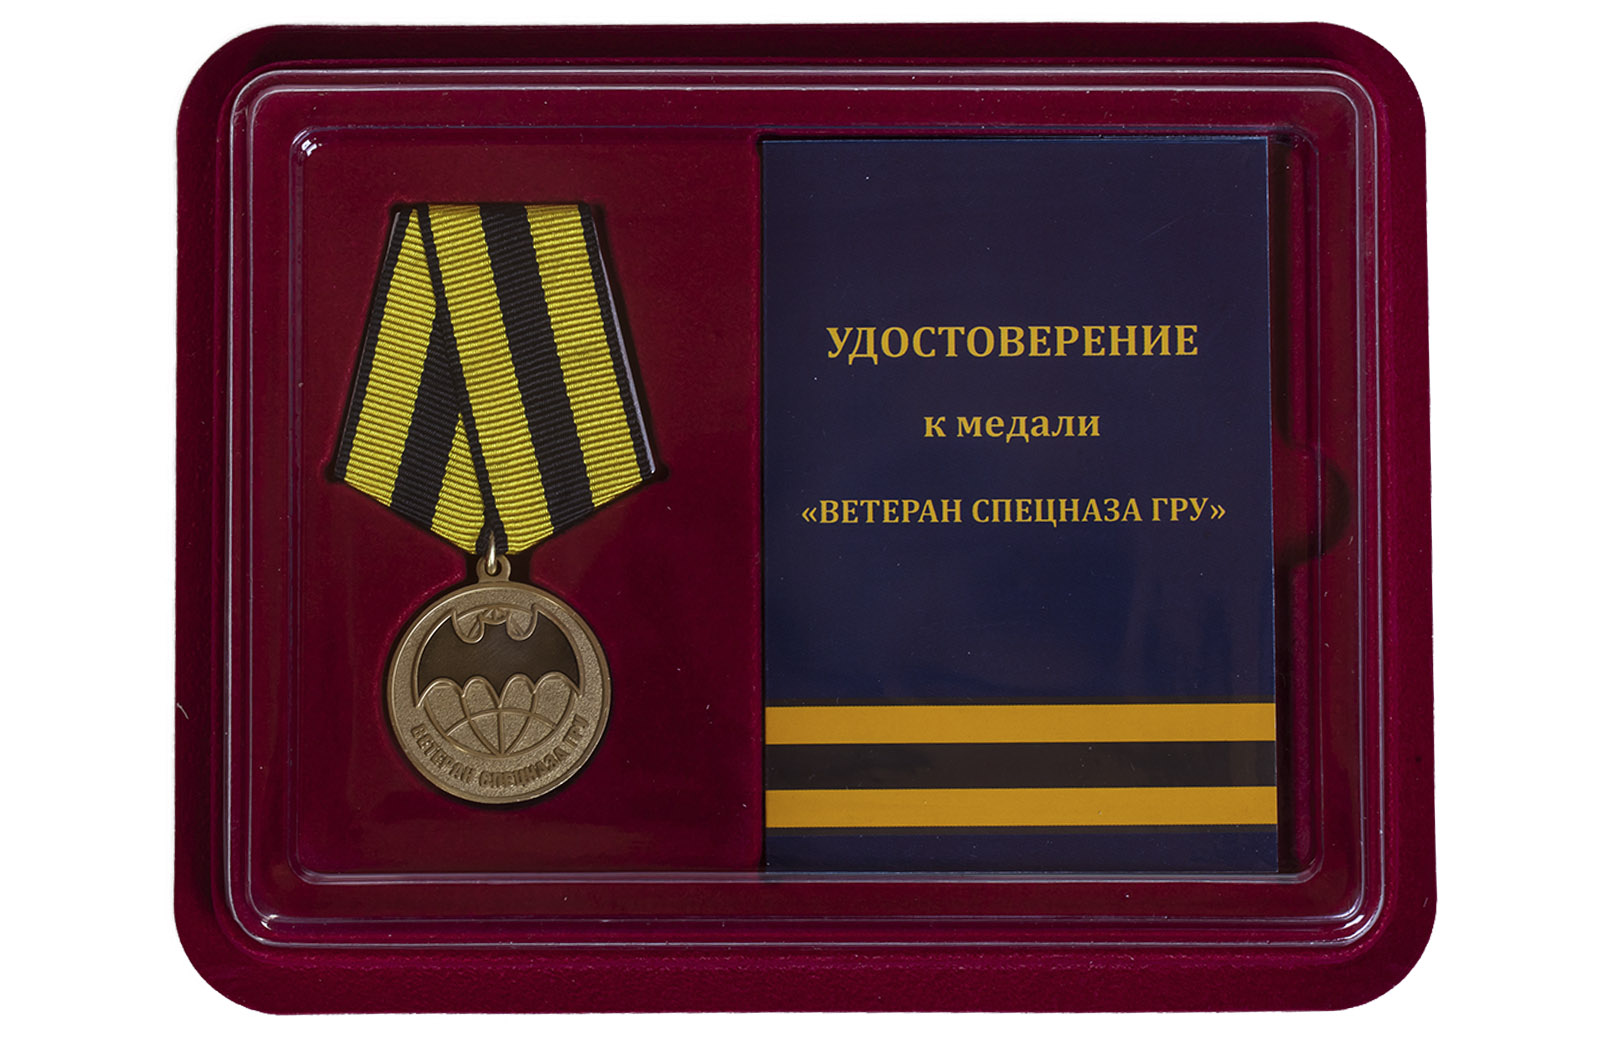 Купить медаль Ветеран Спецназа ГРУ в футляре с удостоверением по лучшей цене